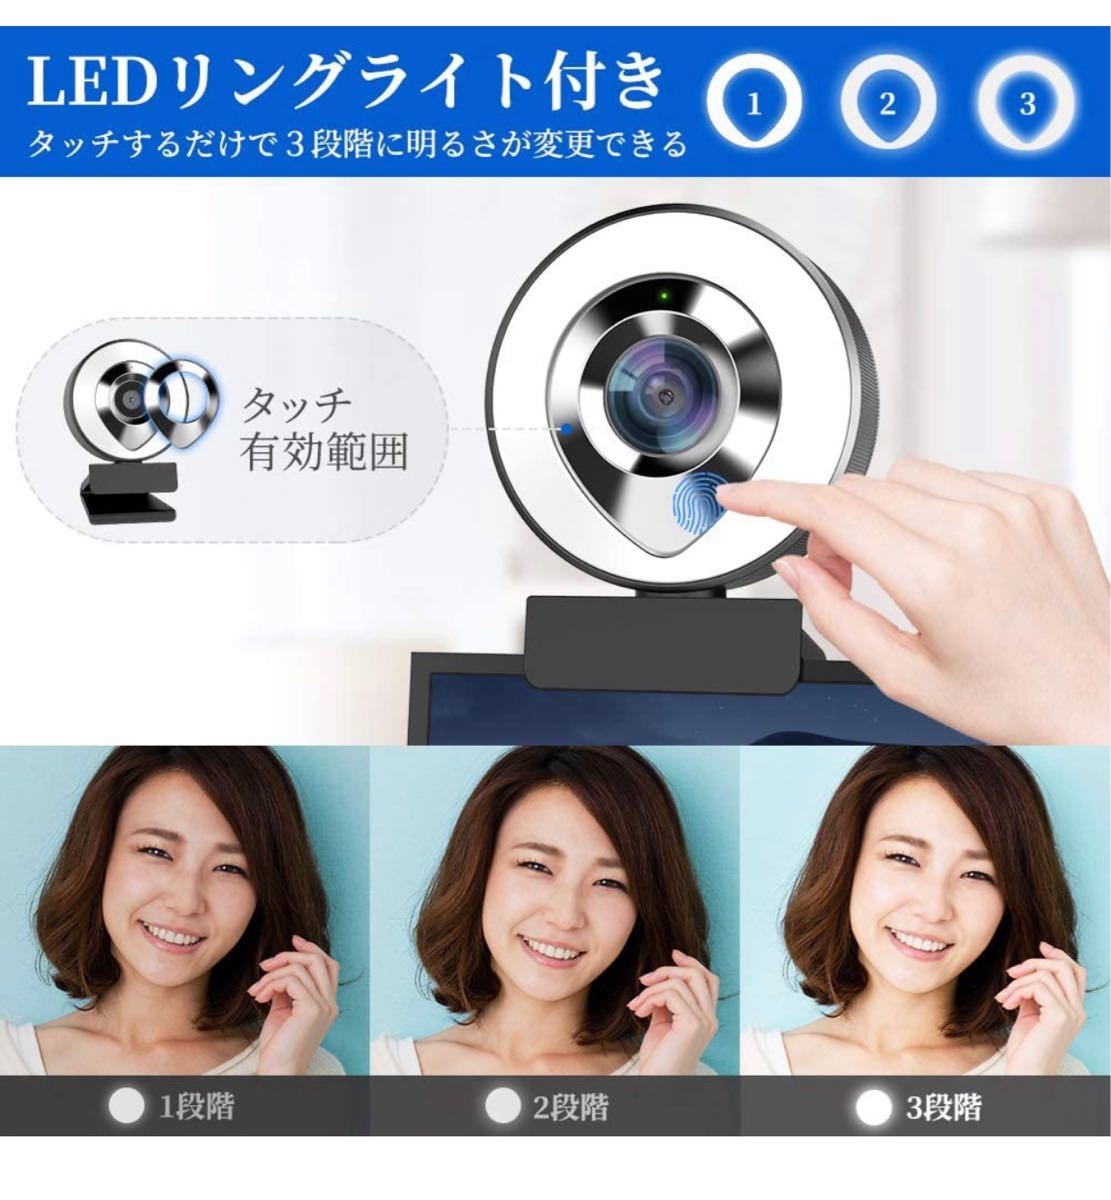 ウェブカメラ LEDライト フルHD 1080P 30FPS 200万画素